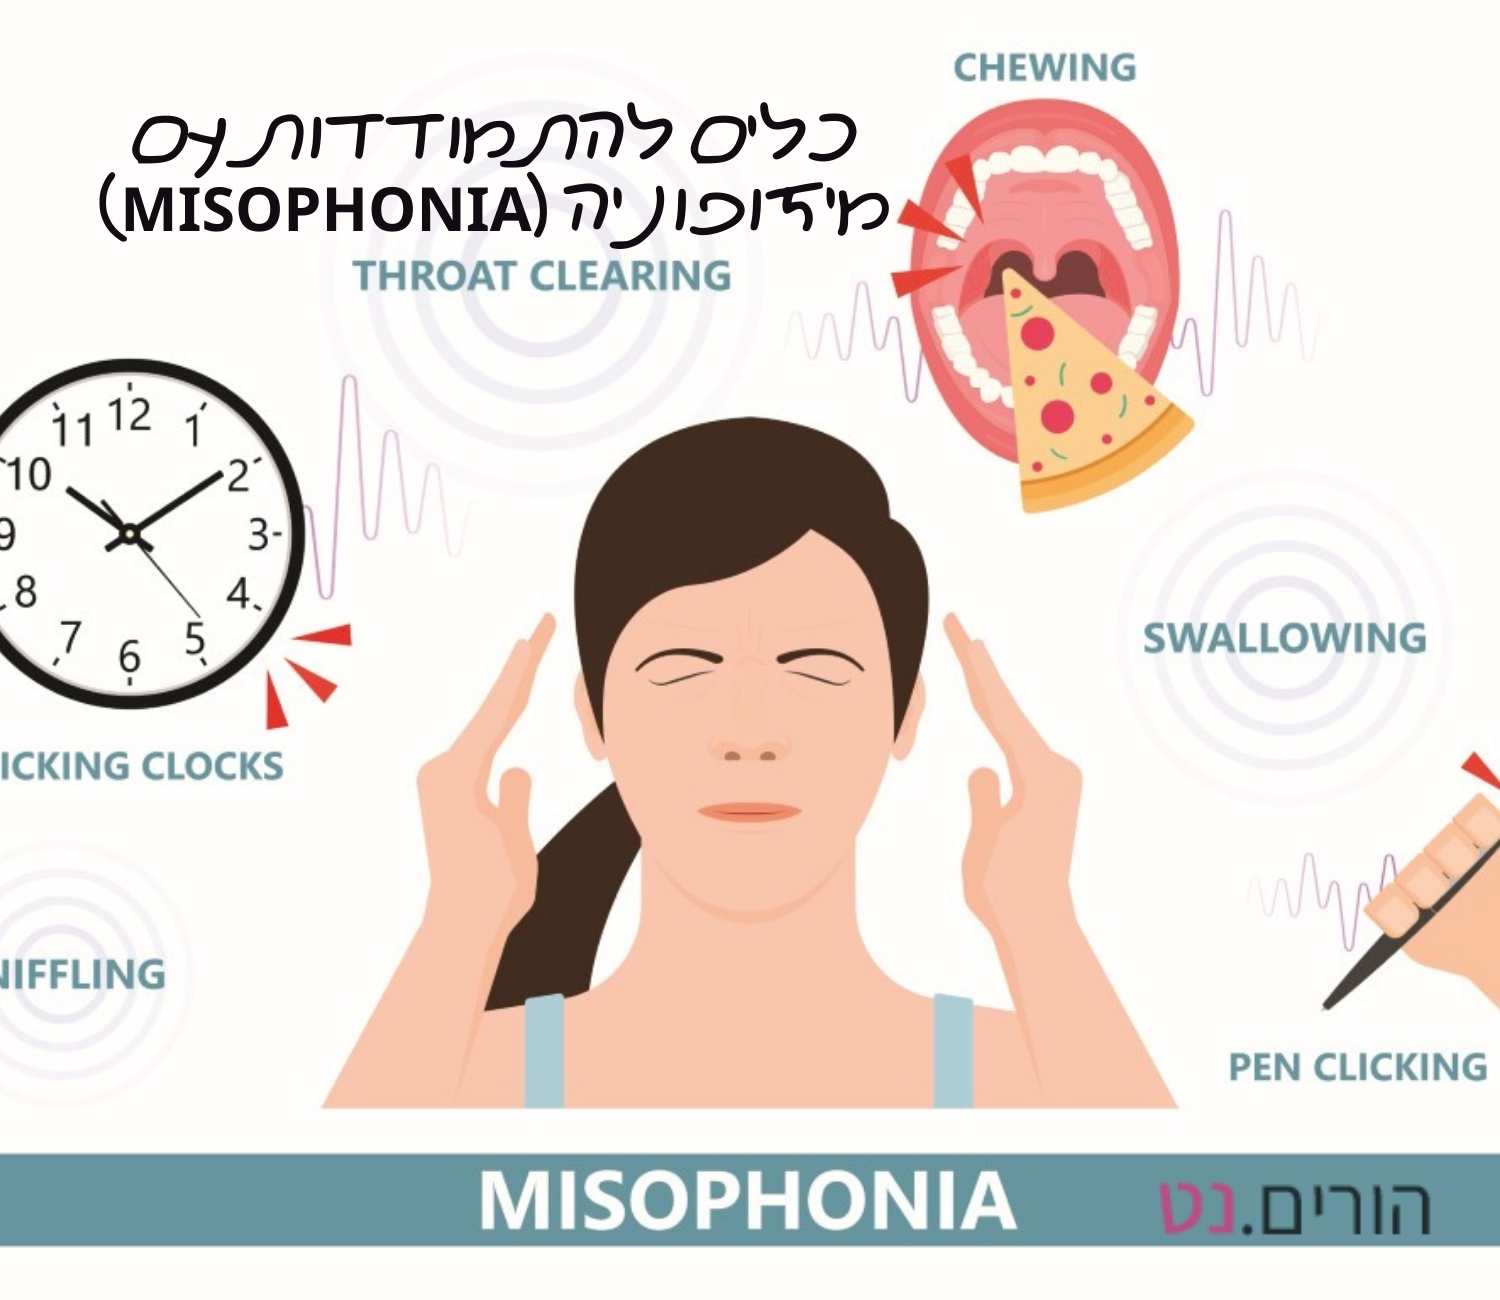 כלים להתמודדות עם מיזופוניה (Misophonia)